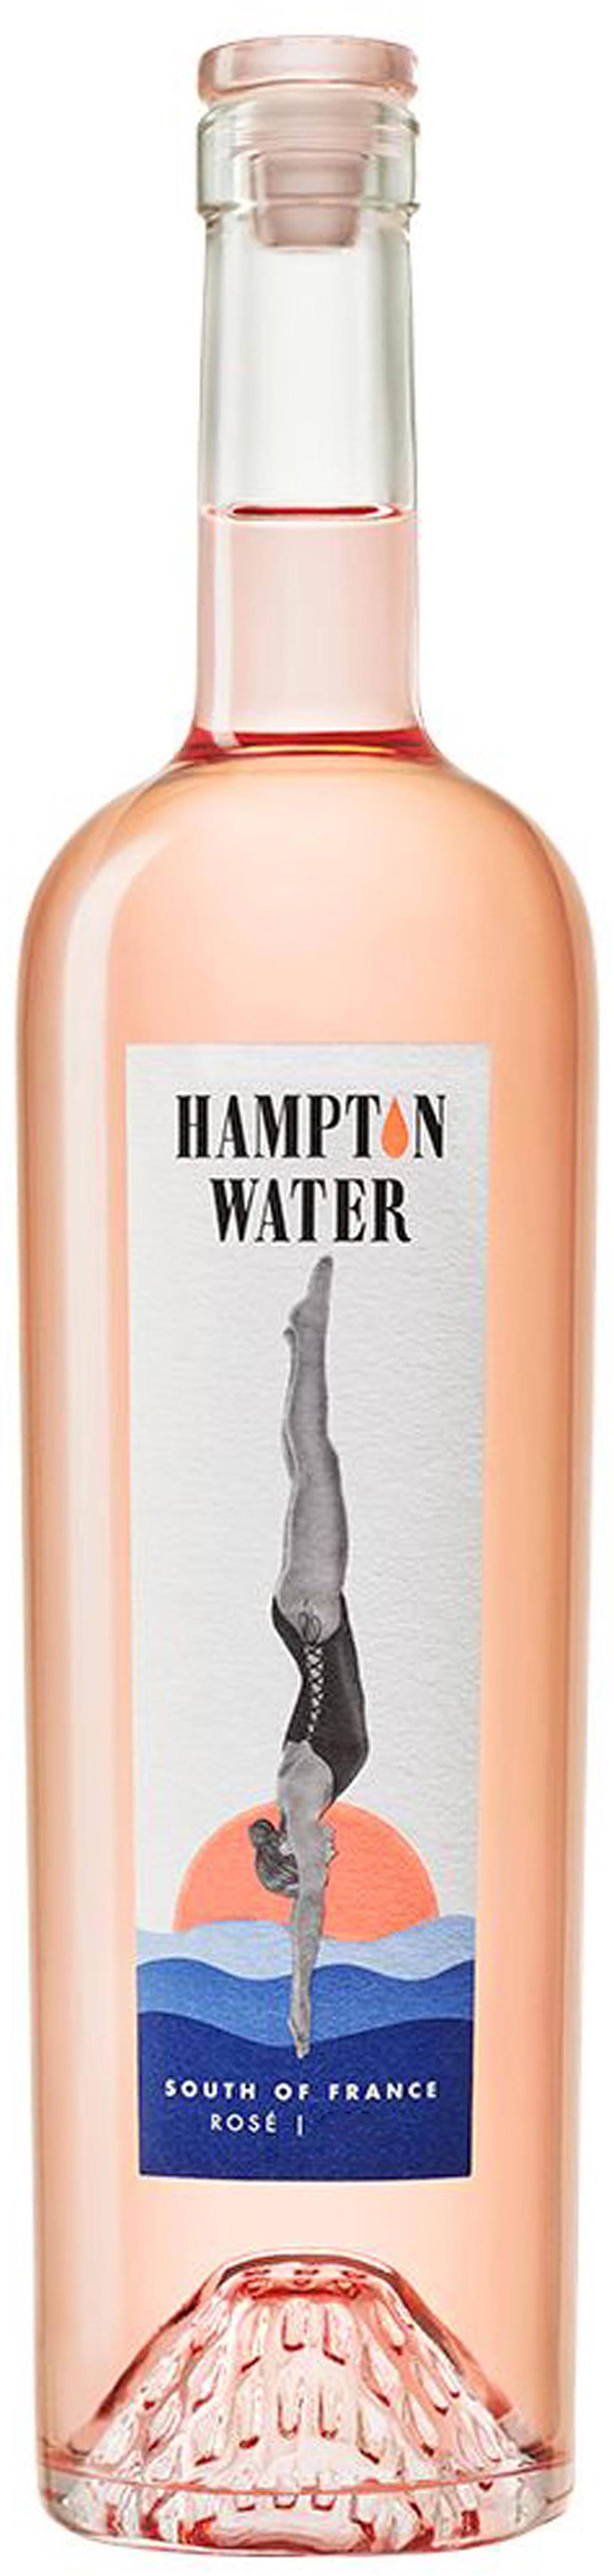 Hampton Water Rose 2021 (750 ml)